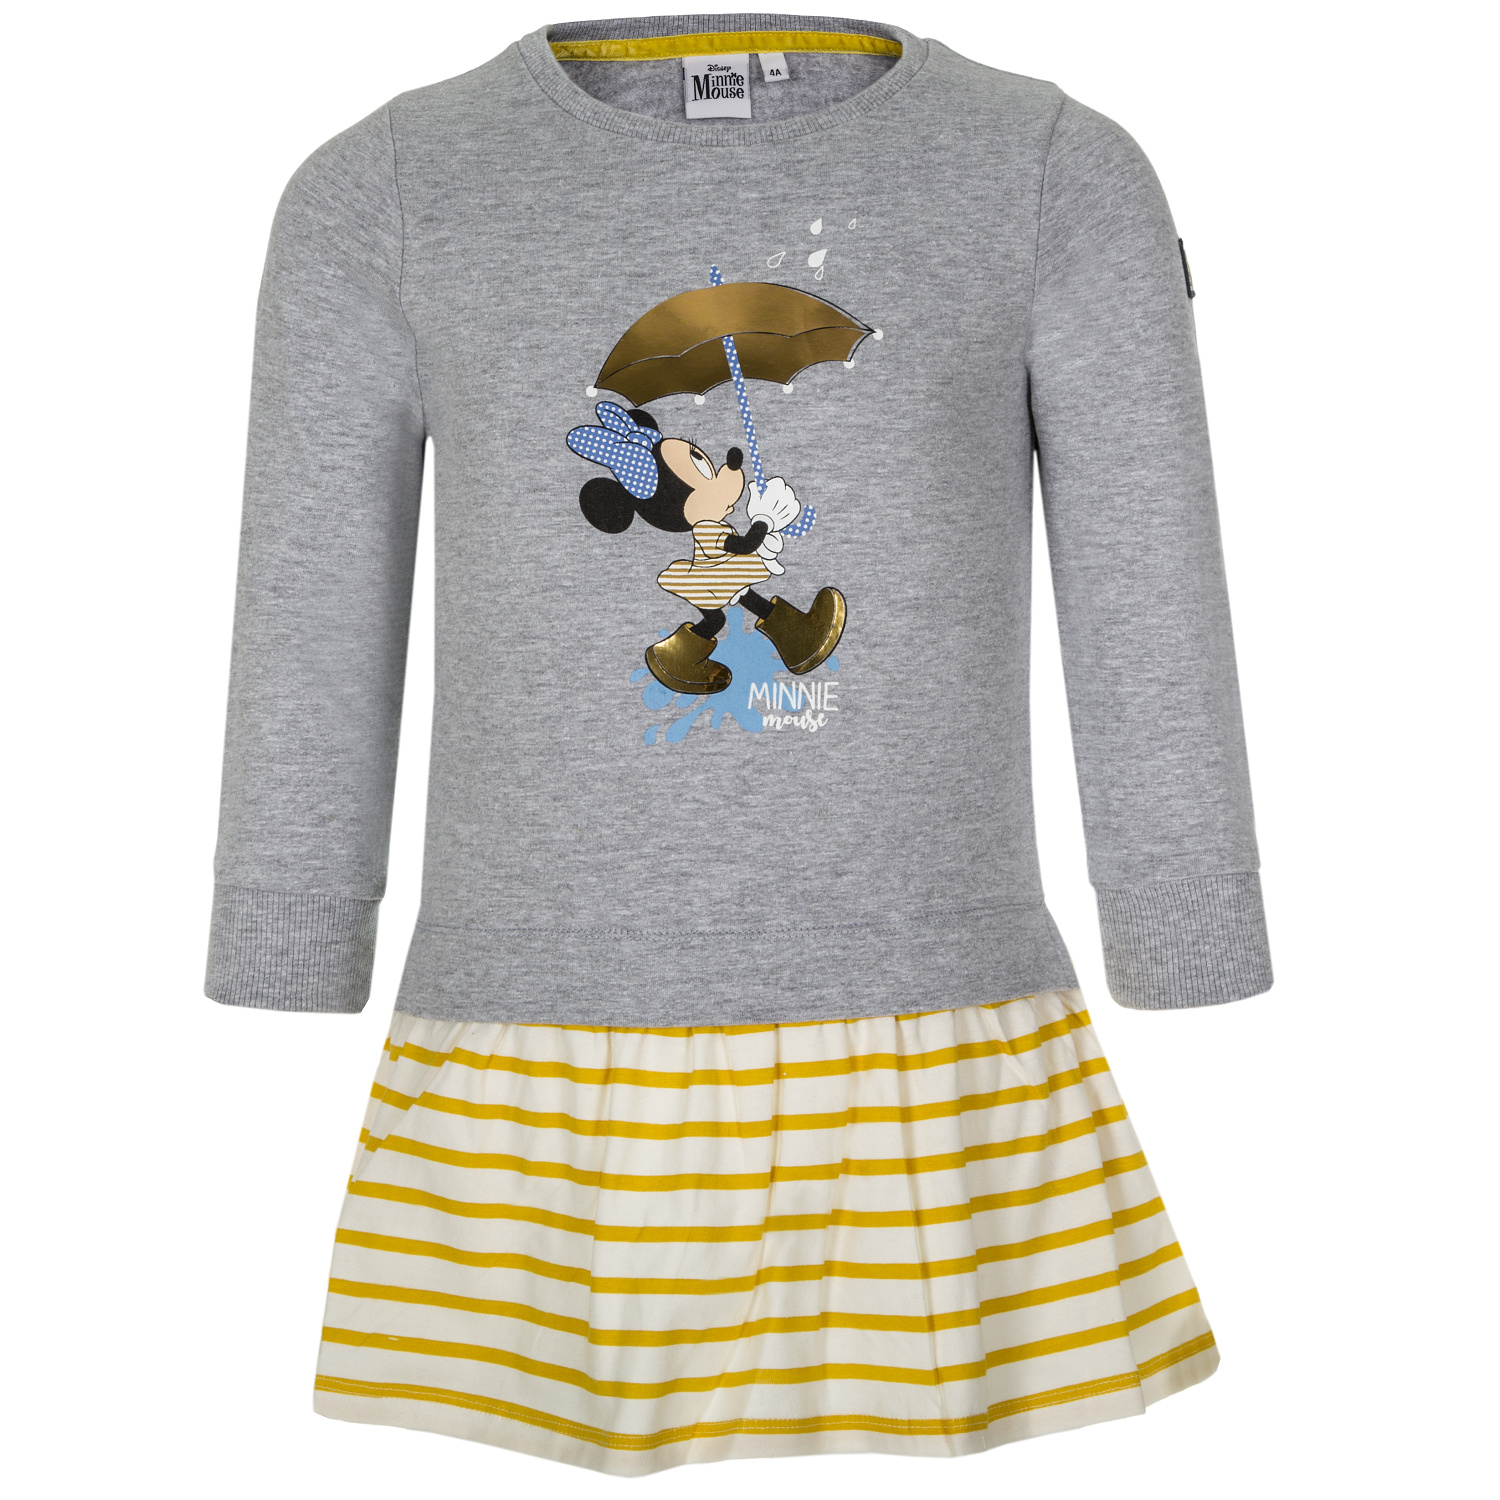 Minnie Mouse - licence Dívčí šaty - Minnie Mouse VH1078, světle šedý melír Barva: Šedá, Velikost: 116